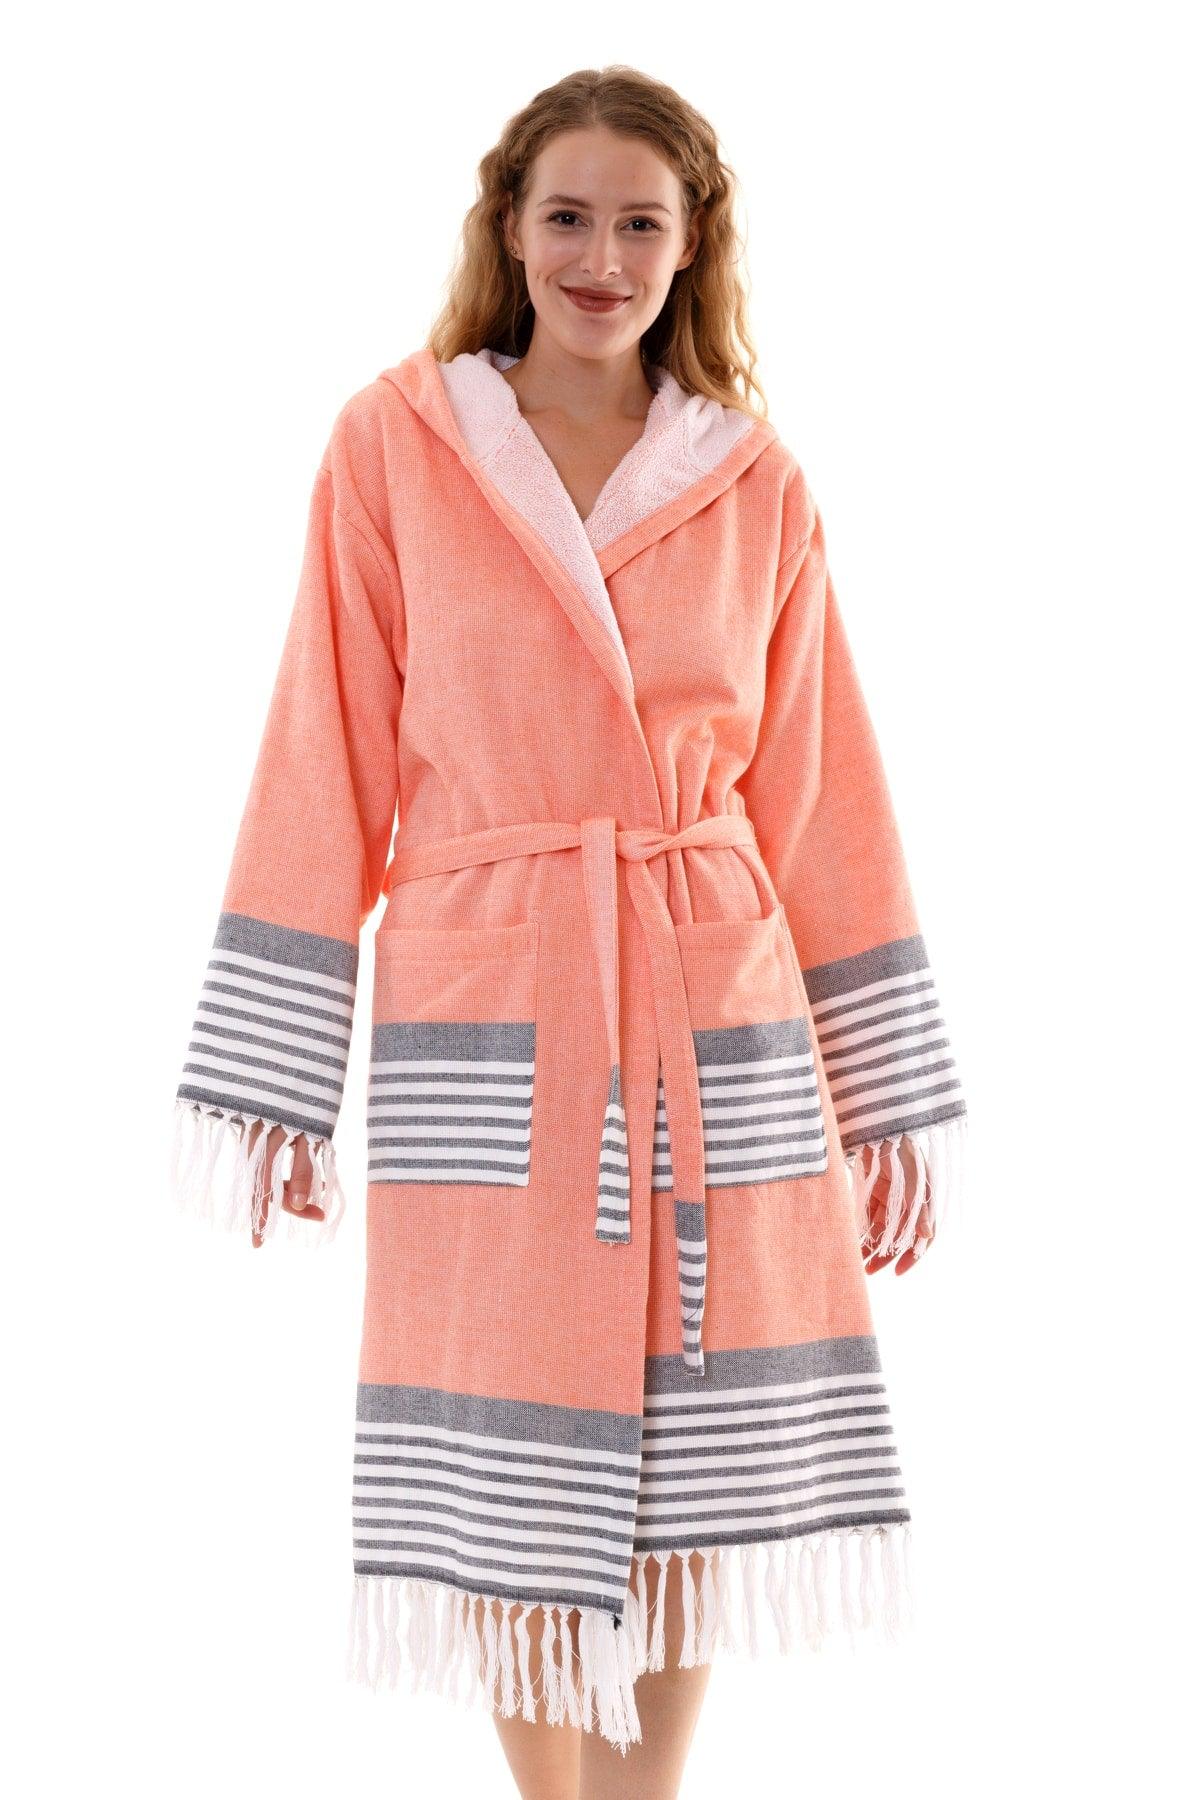 Set of 2 Large Size Bathrobes | Hooded Bathrobe &cotton Bath Towel Loincloth | Unisex (2xl-3xl-4xl) - Swordslife